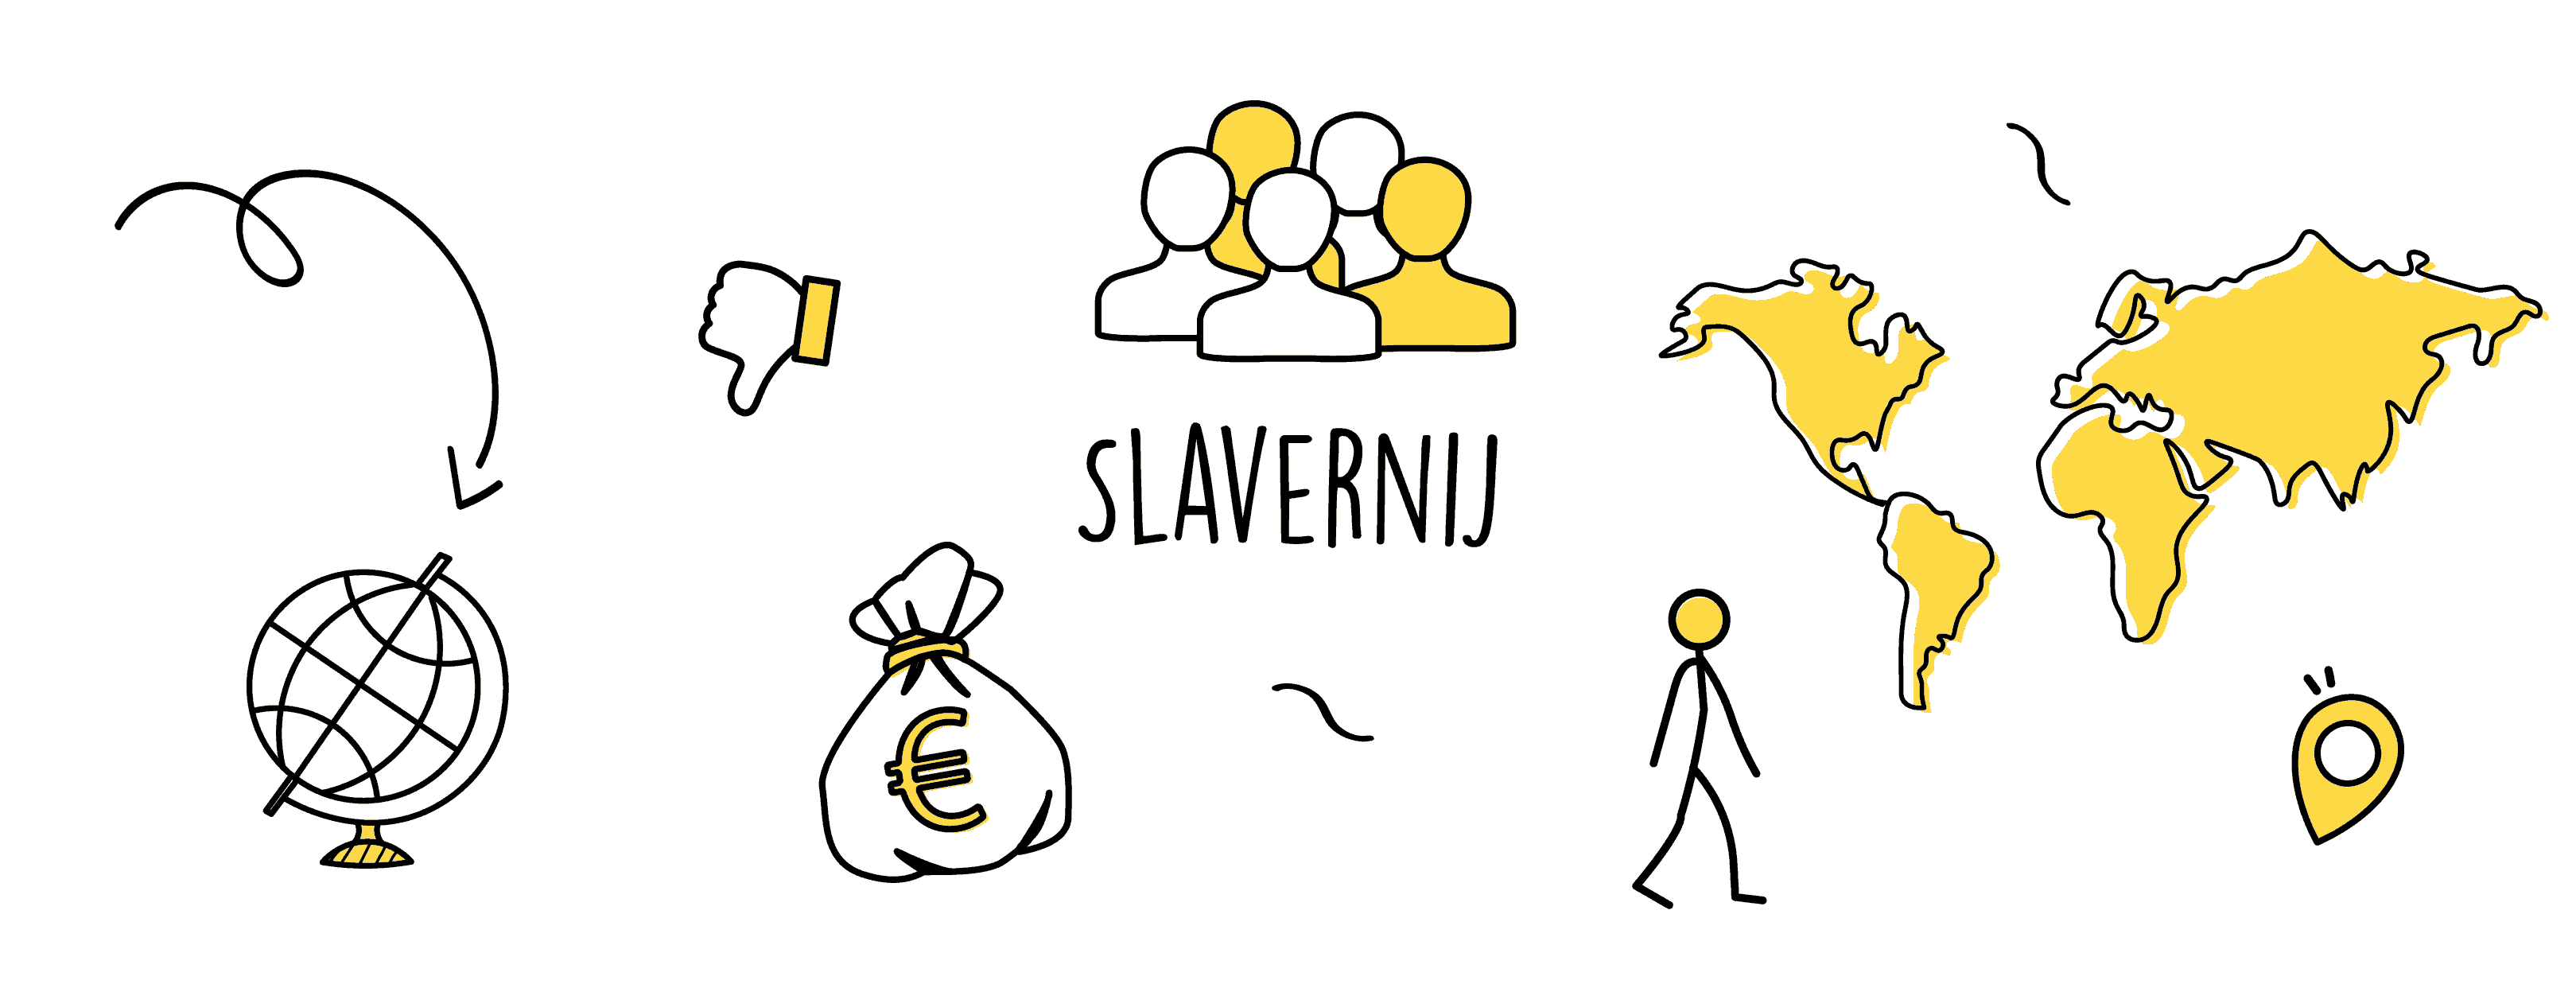 Slavernij